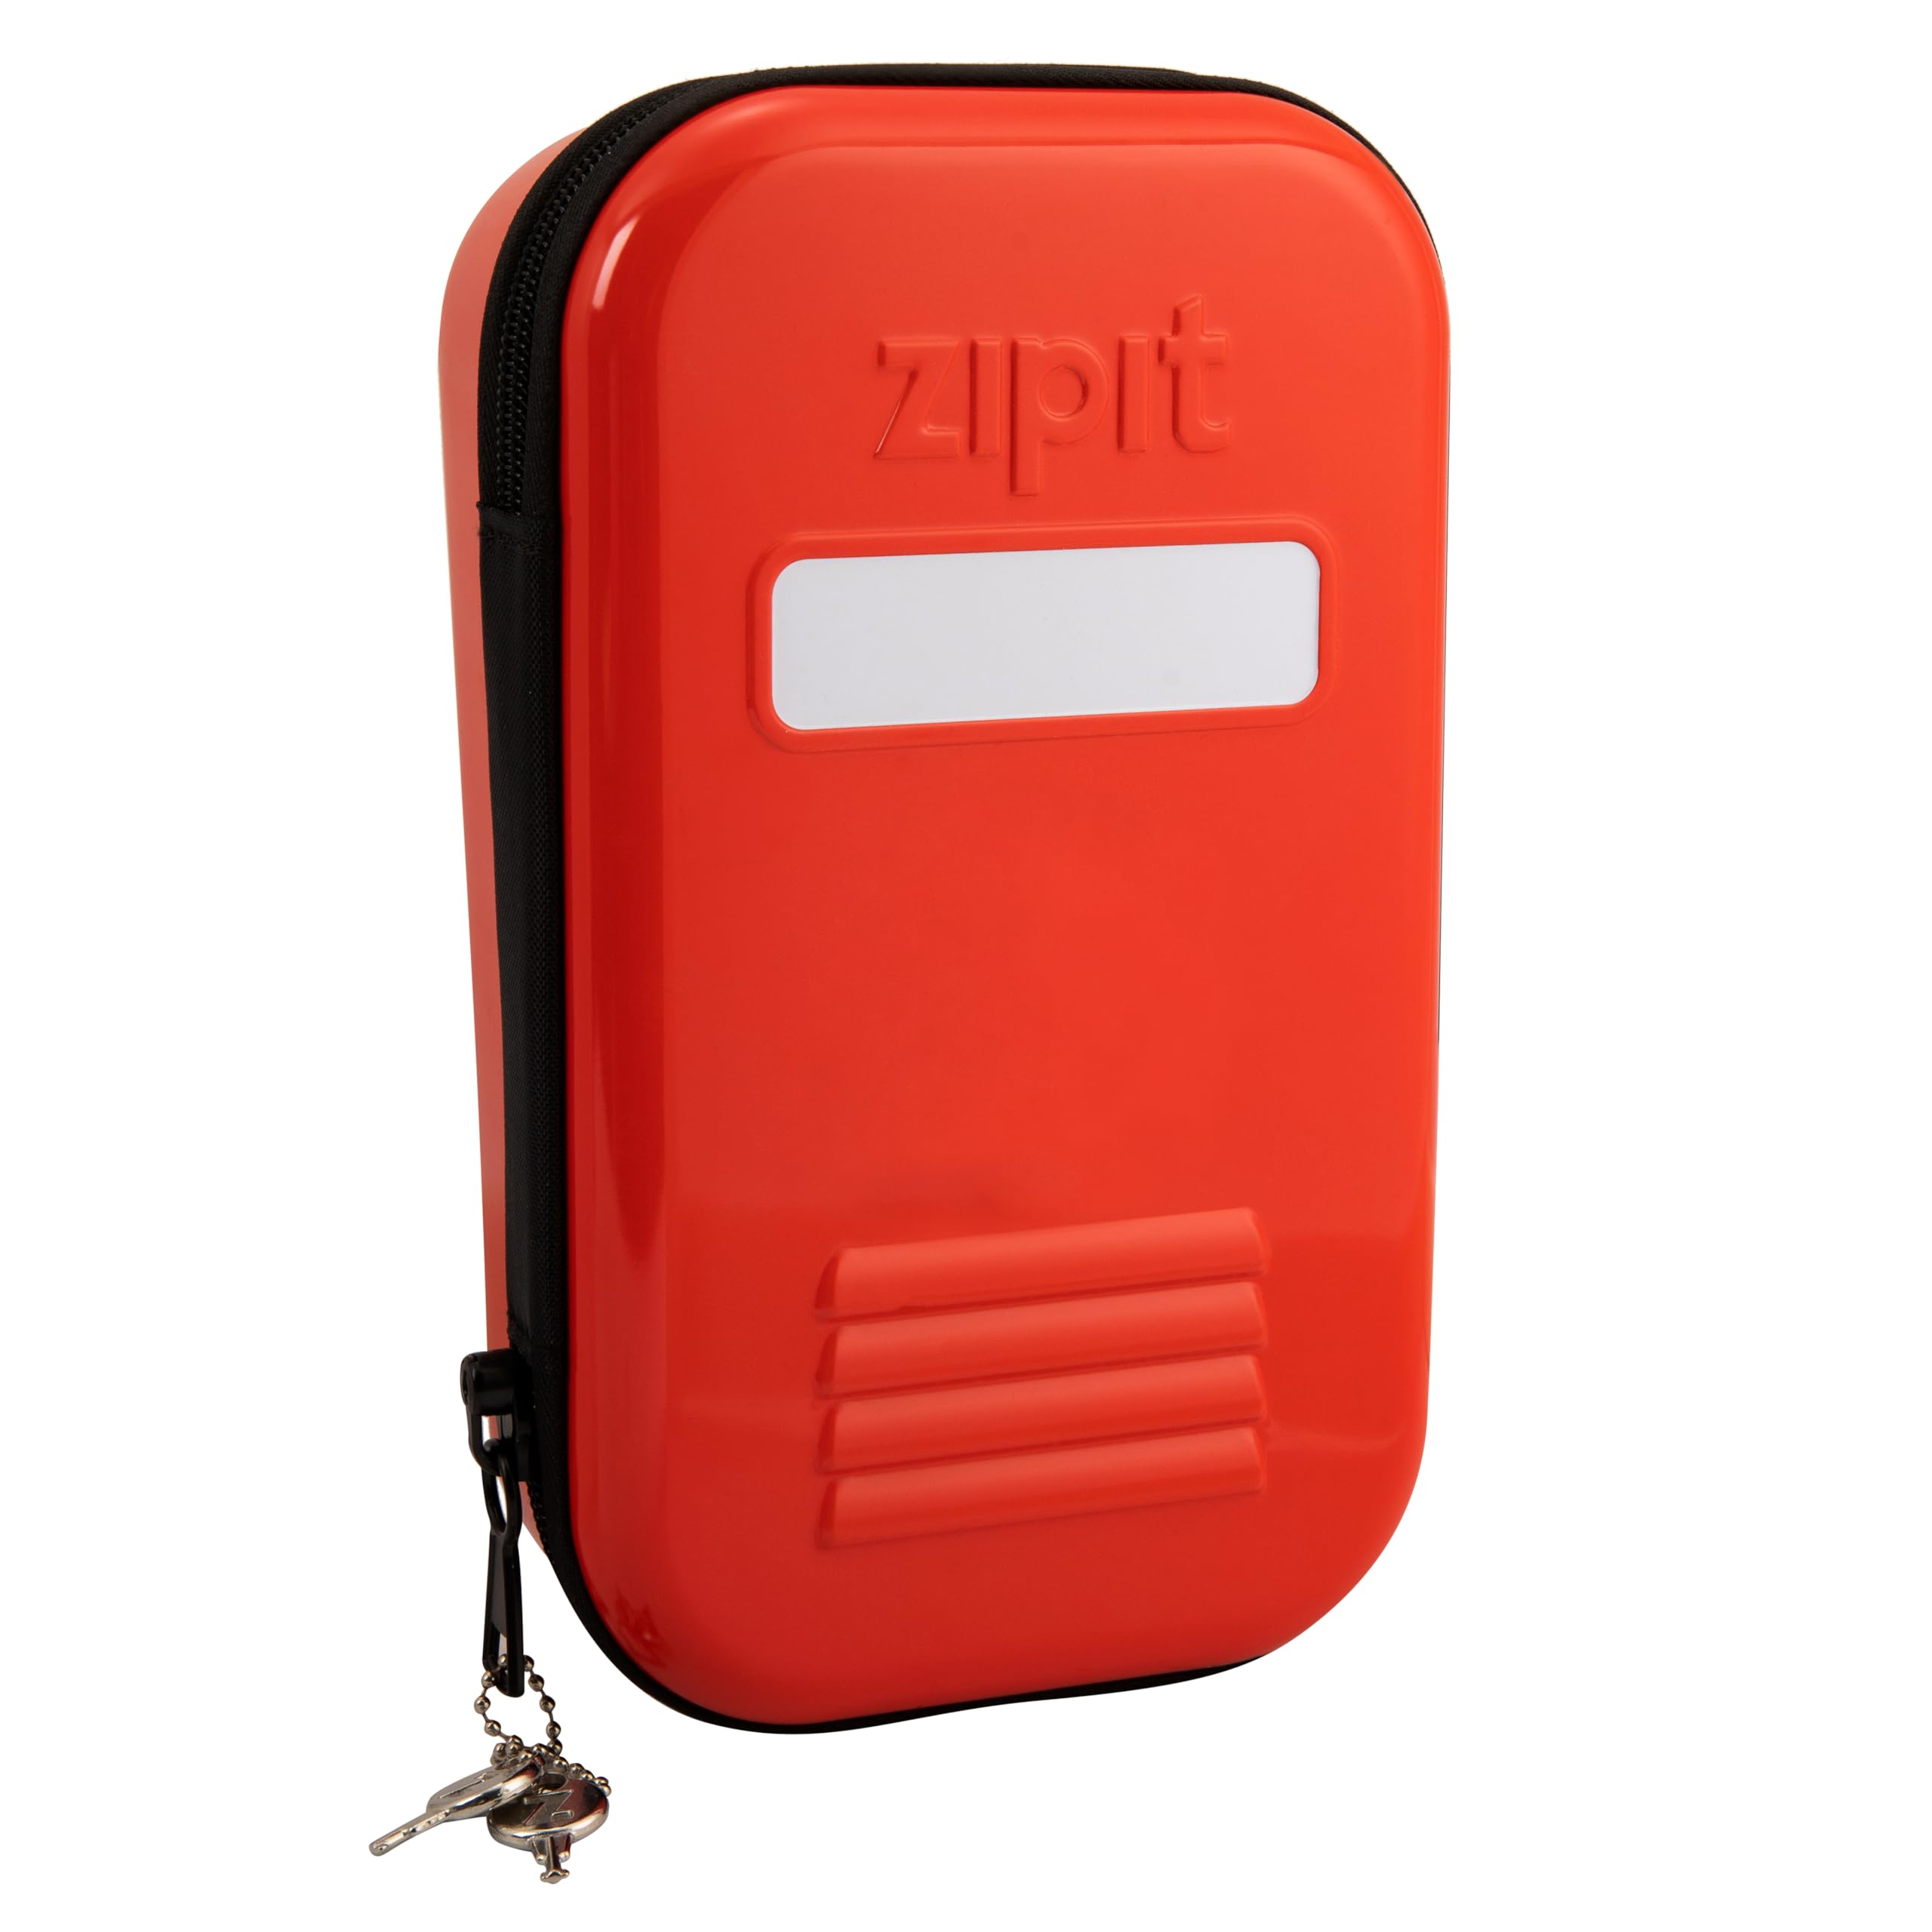 ZIPIT Lock Federmäppchen für Kinder | abschließbare Blechdose für Schule und Büro | rotes Federmäppchen | großes Fassungsvermögen